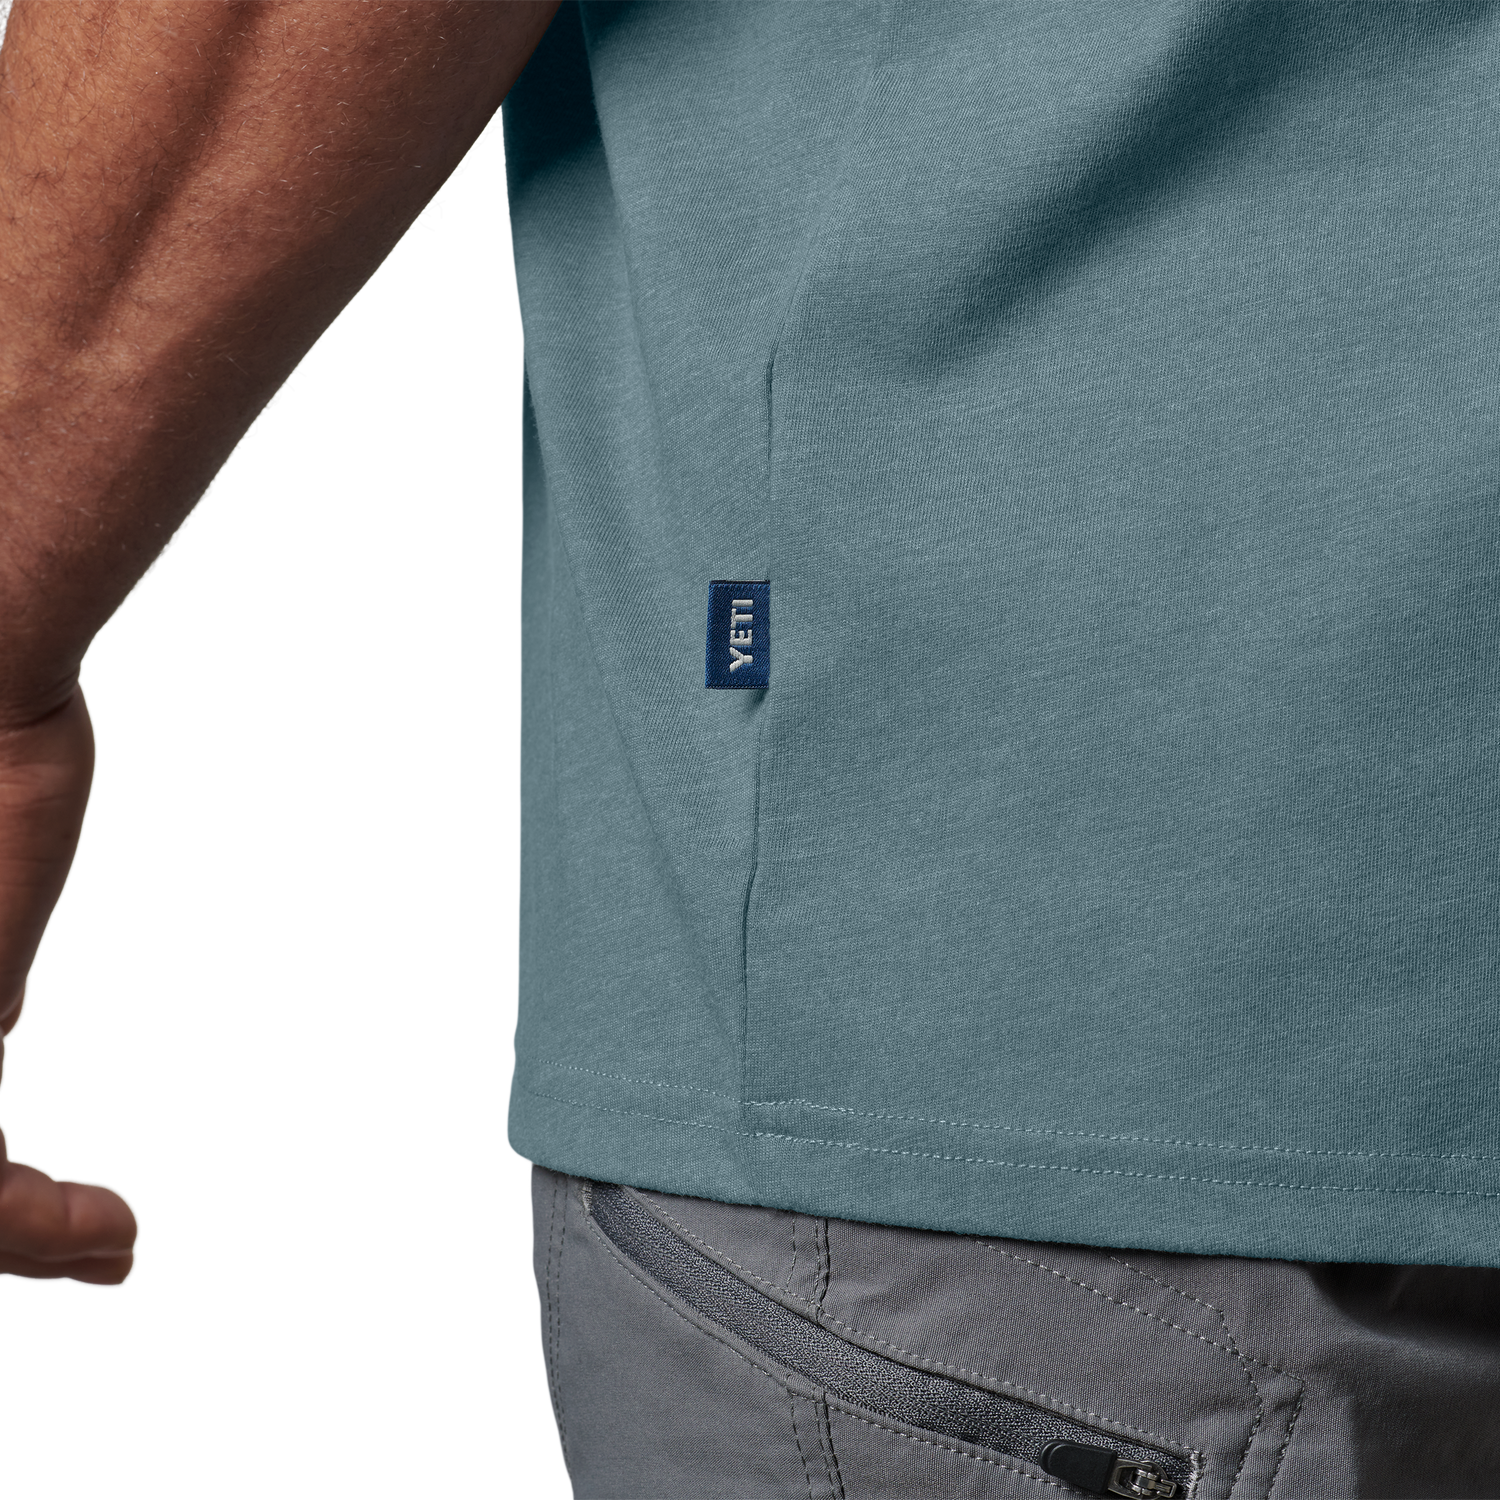 YETI Premium T-shirt met korte mouwen met logobadge Indigo